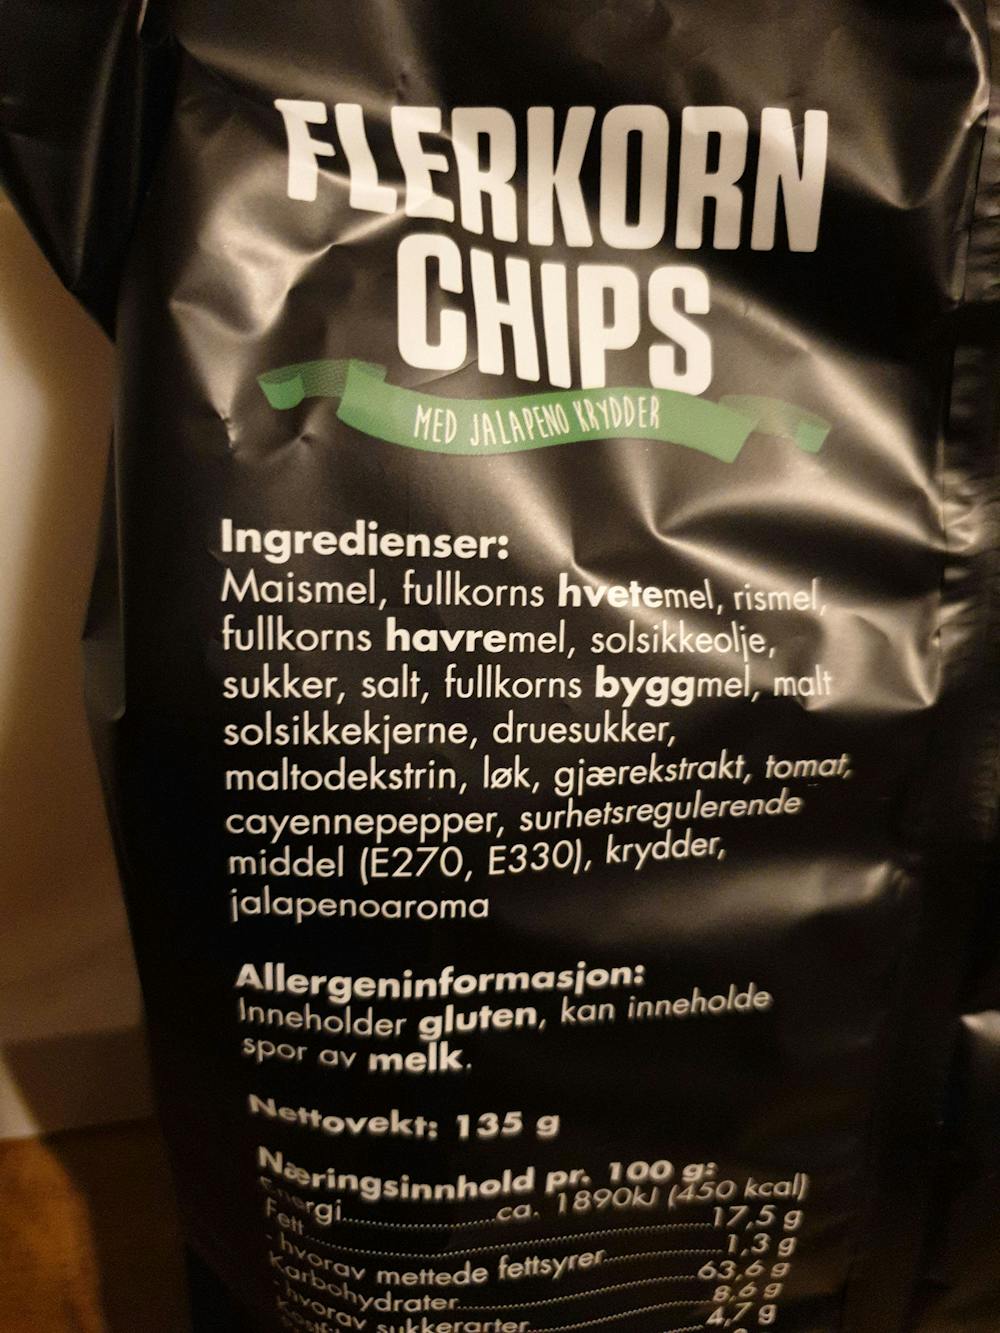 Ingredienslisten til Flerkorn chips med jalapeni krydder, Luxus